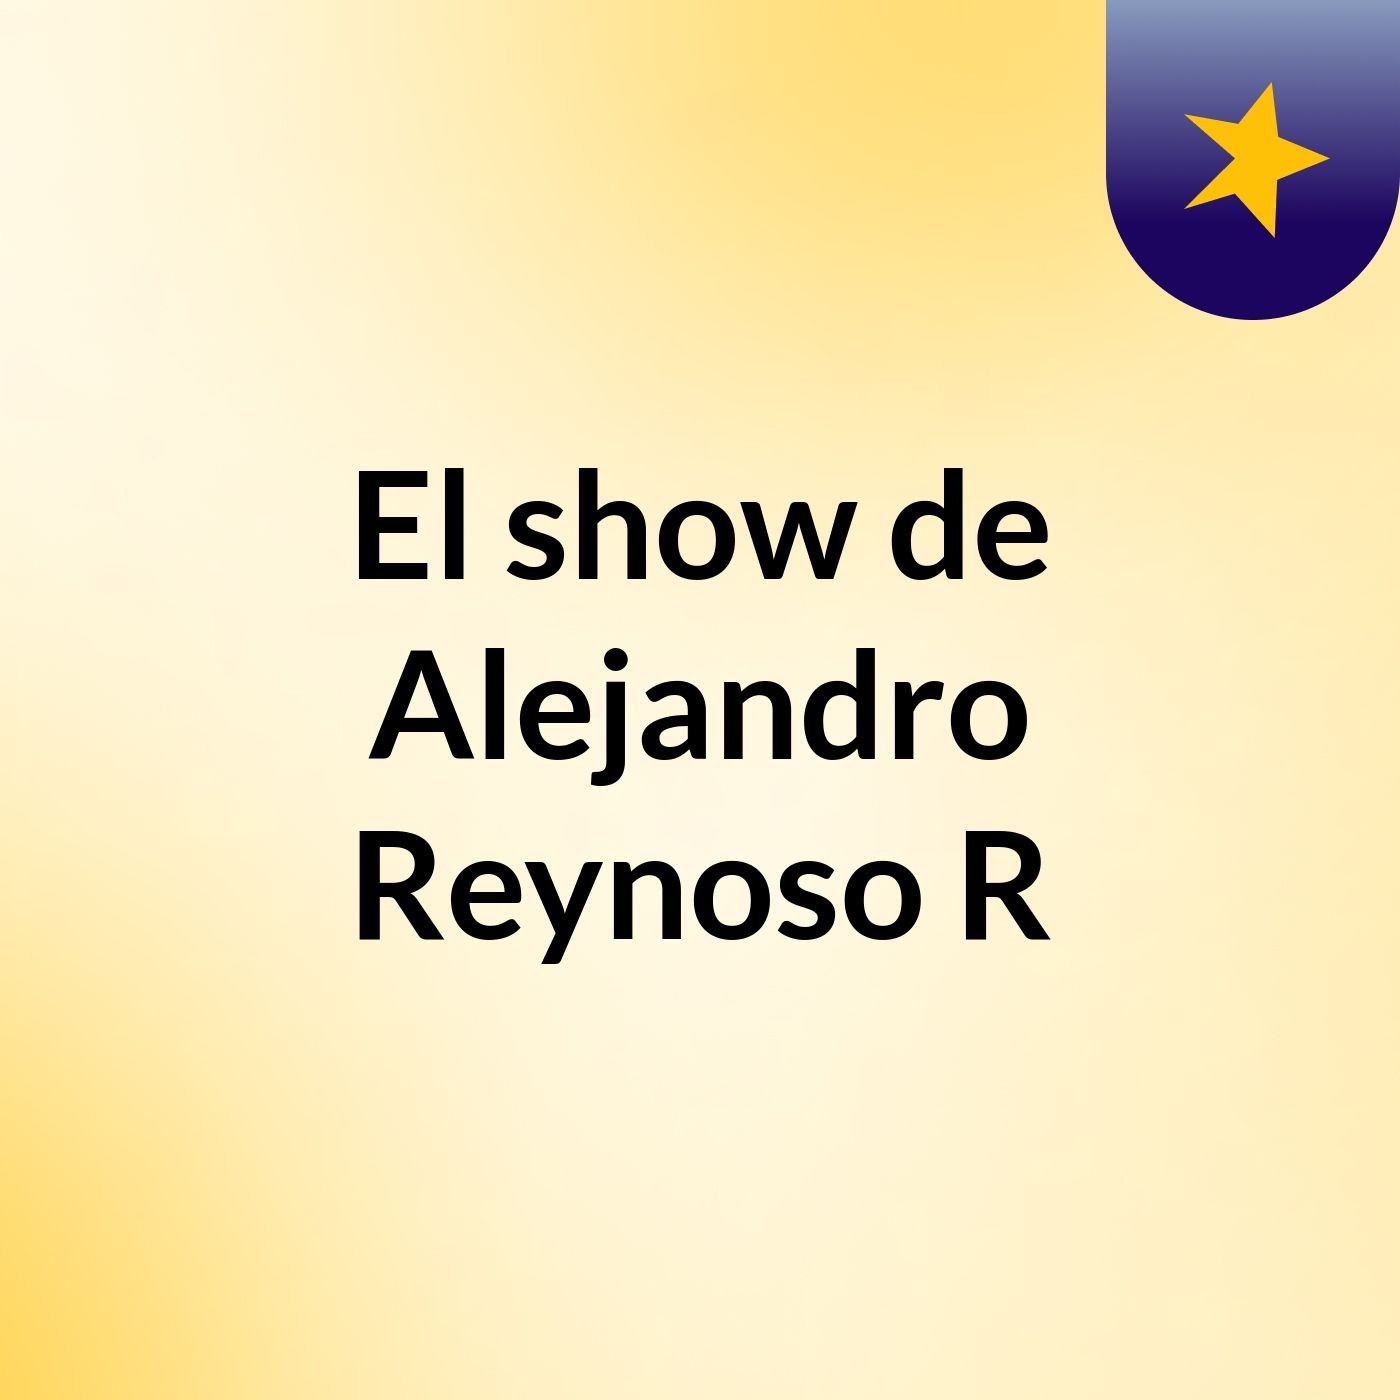 El show de Alejandro Reynoso R